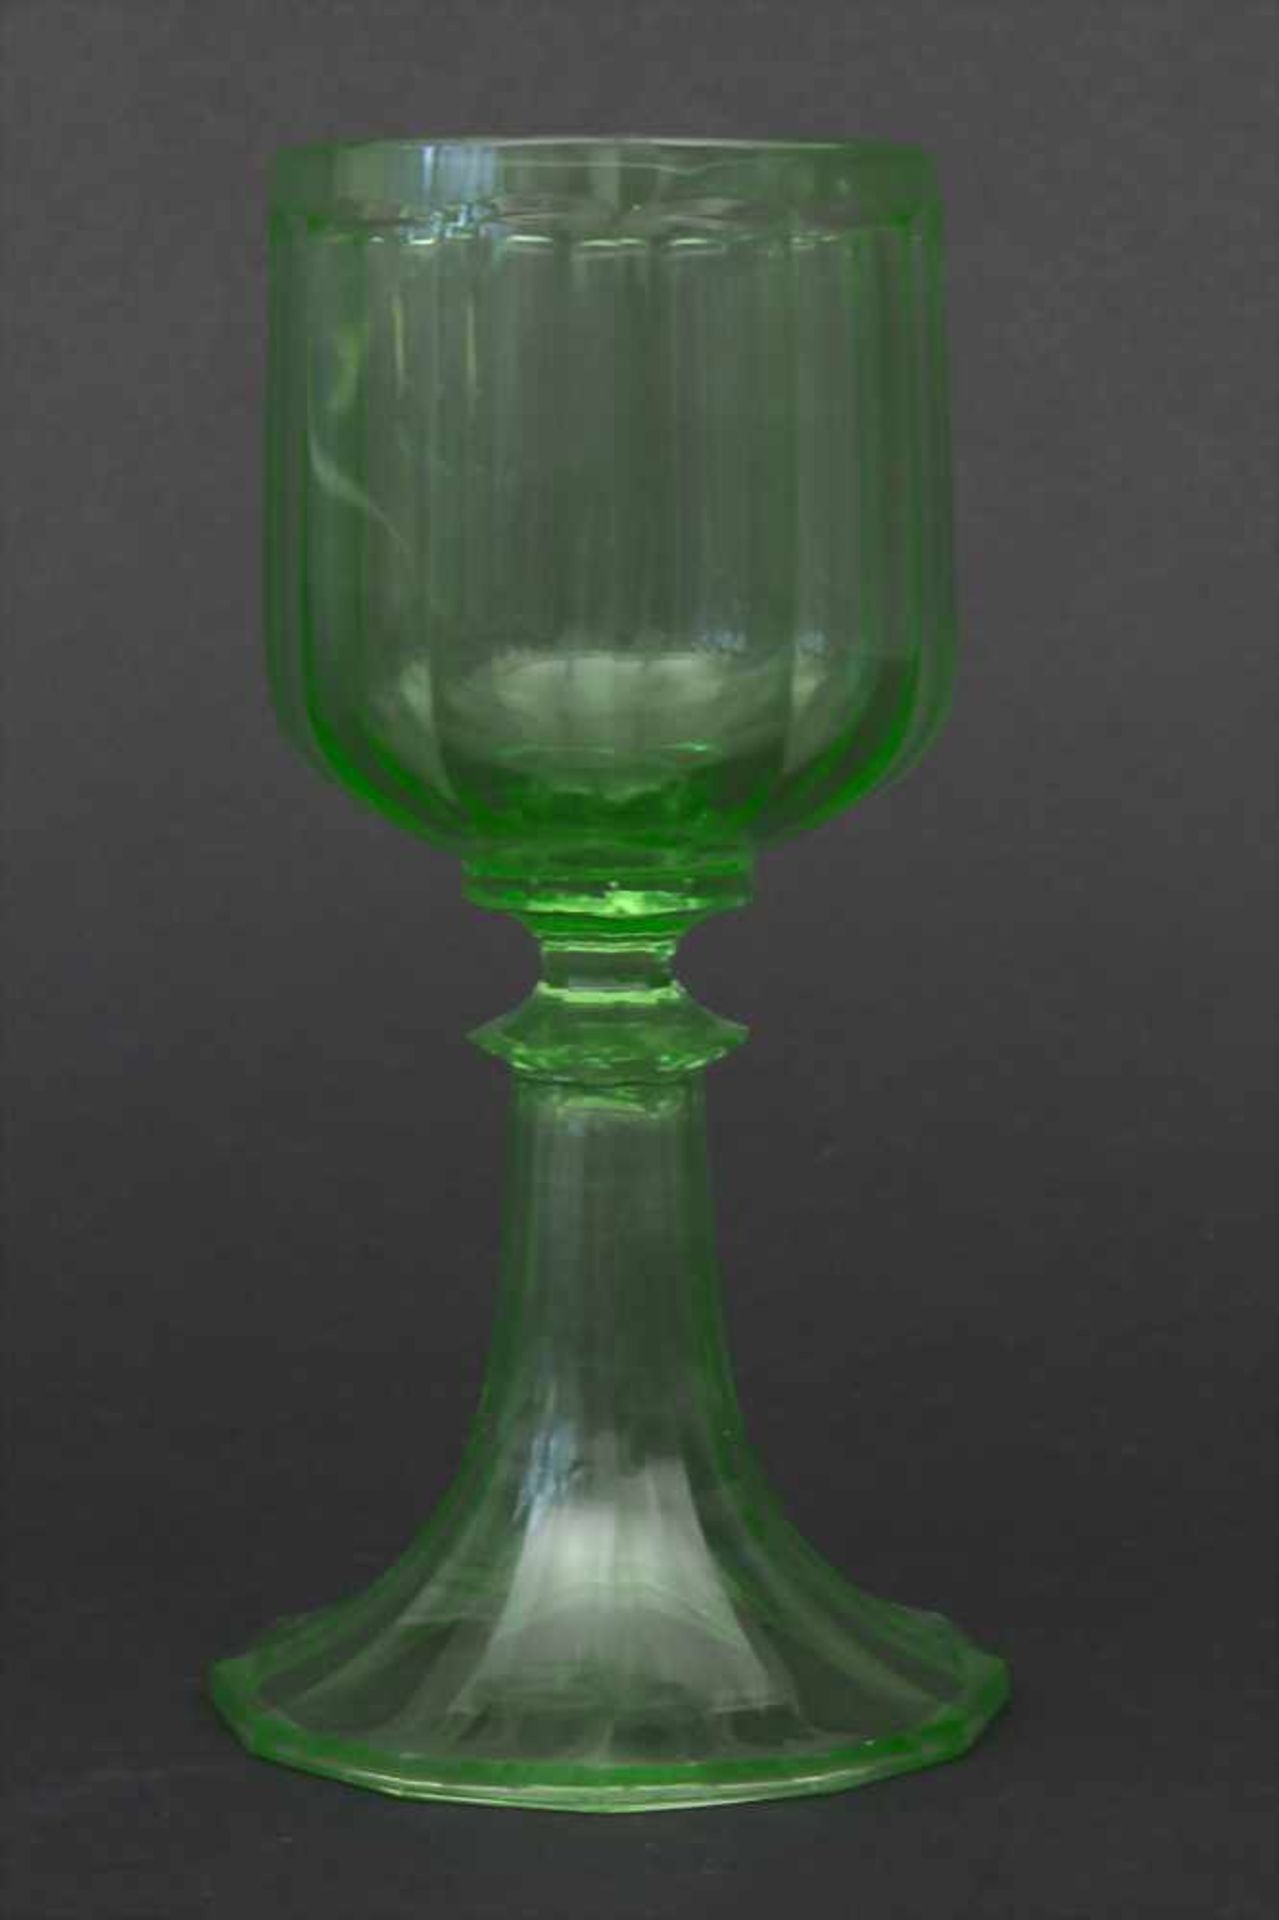 2 Urangläser / 2 uranium glasses, wohl J. & L. Lobmeyr, Wien, um 1880Material: grünes Uranglas mit - Bild 2 aus 4